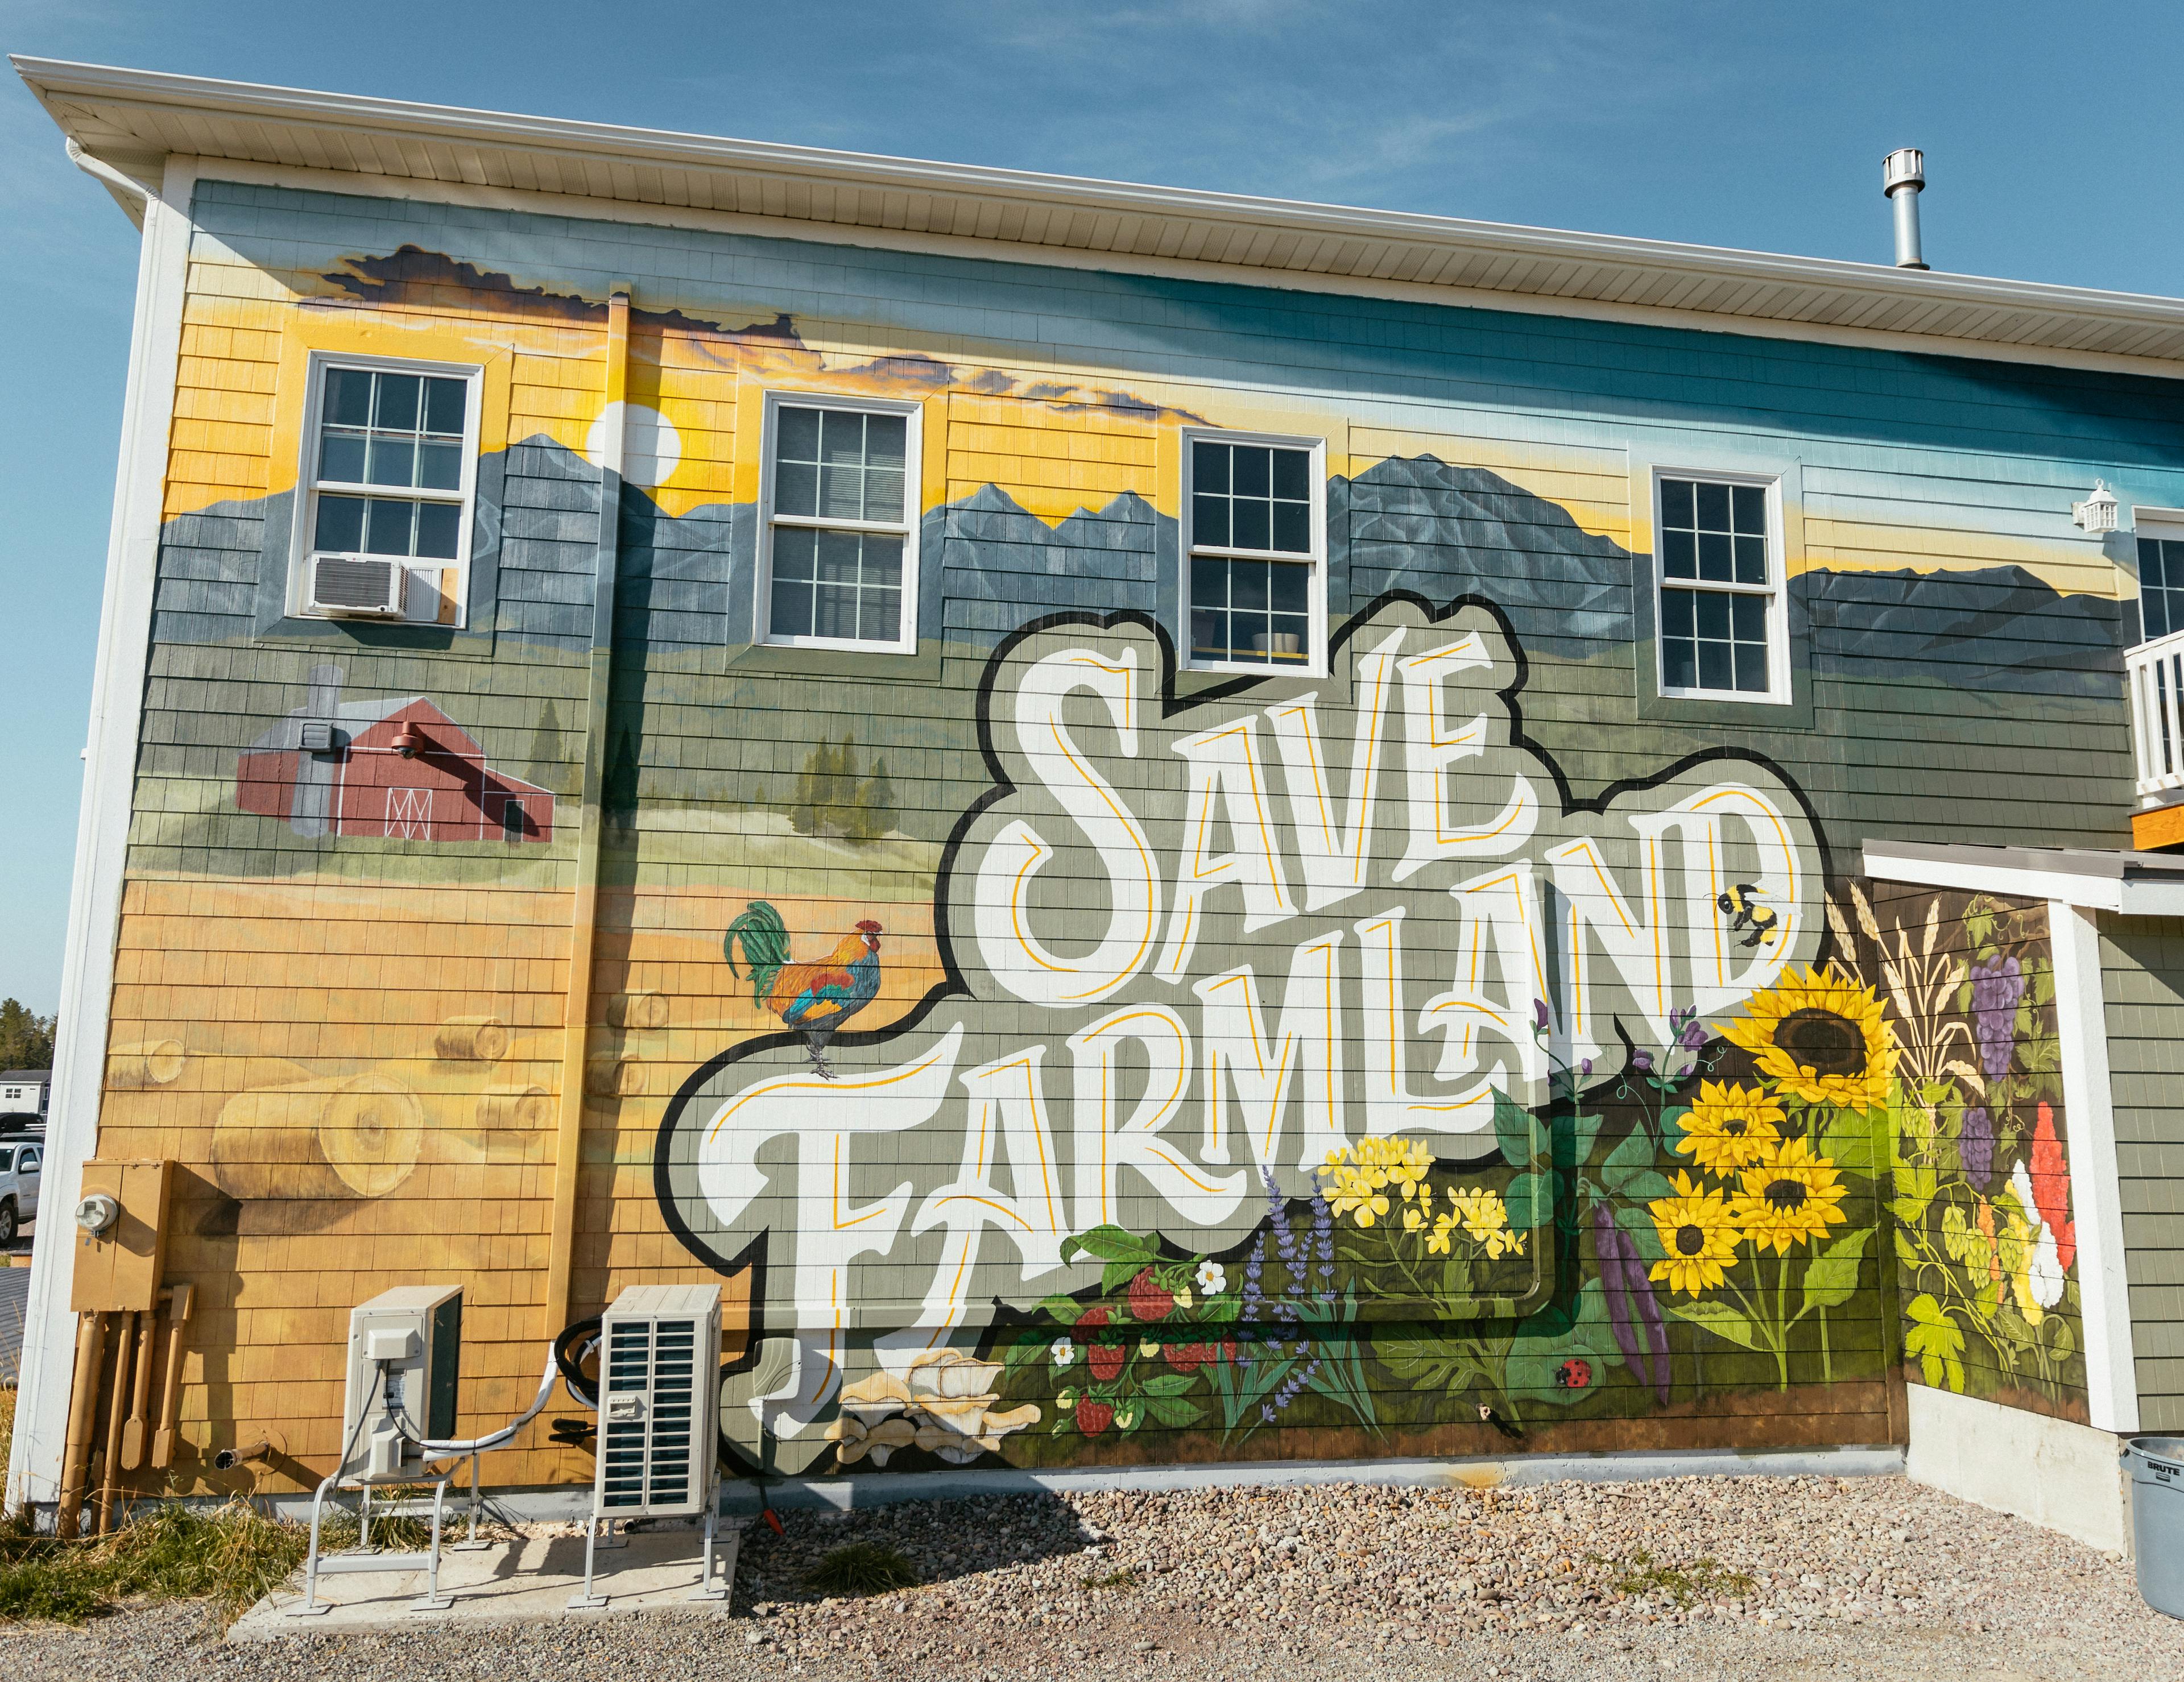 Save Farmland Mural